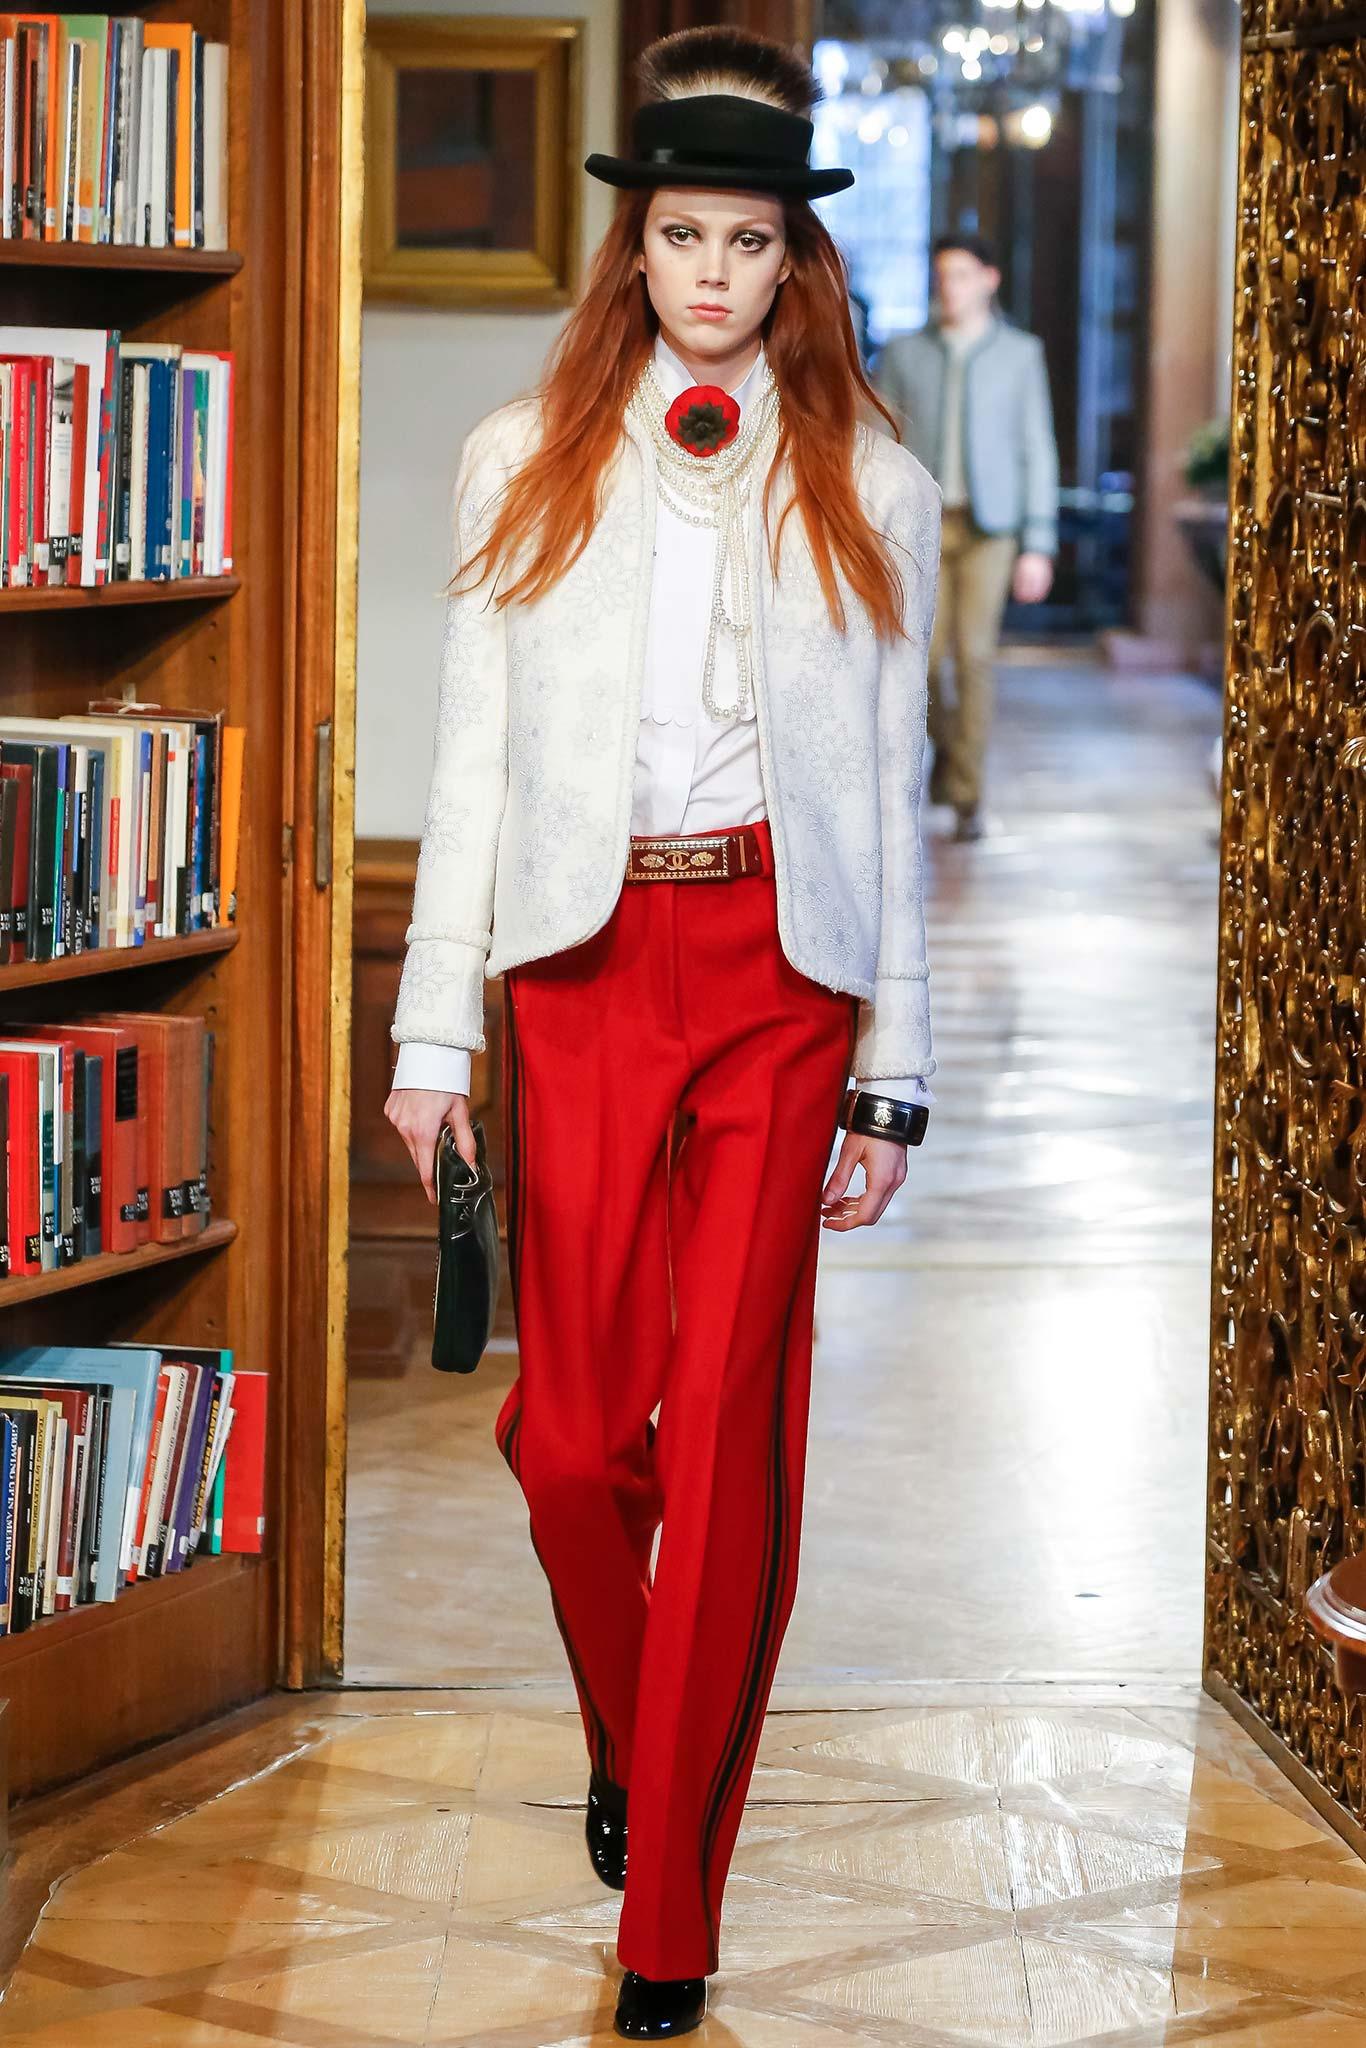 Absolut atemberaubende Chanel Couture Tweedjacke mit Edelweiß-Kristallverzierung -- von Runway of Paris / SALZBURG Metiers d'Art Collection.
Einzelhandelspreis ca. 14.000€ : der heutige Boutique-Preis für ein ähnliches Stück beginnt bei